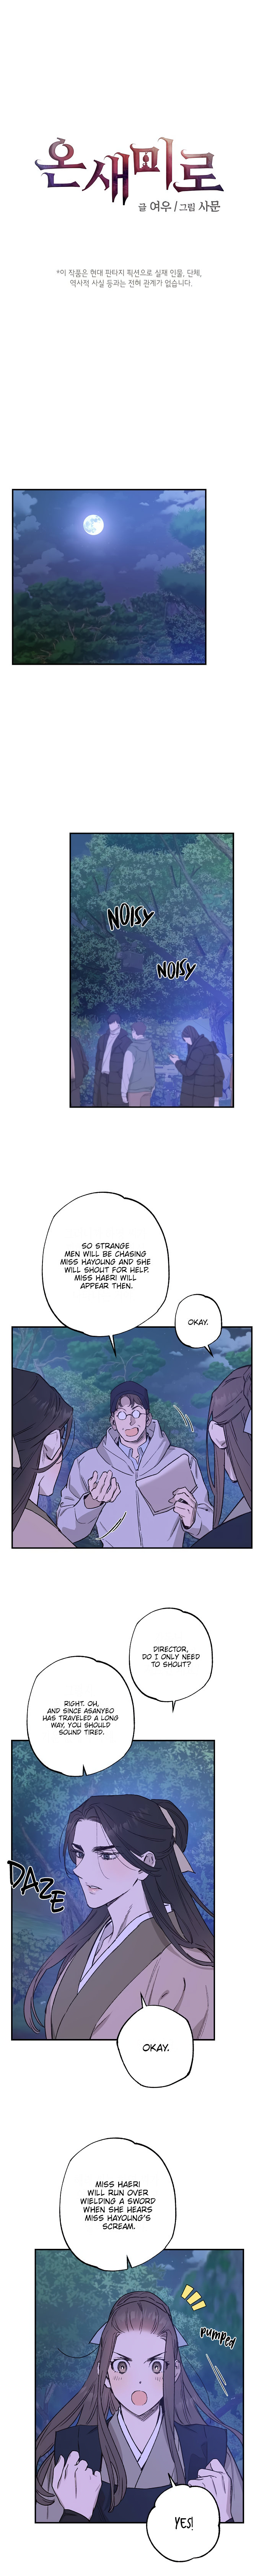 Onsaemiro - Chapter 35 Page 1